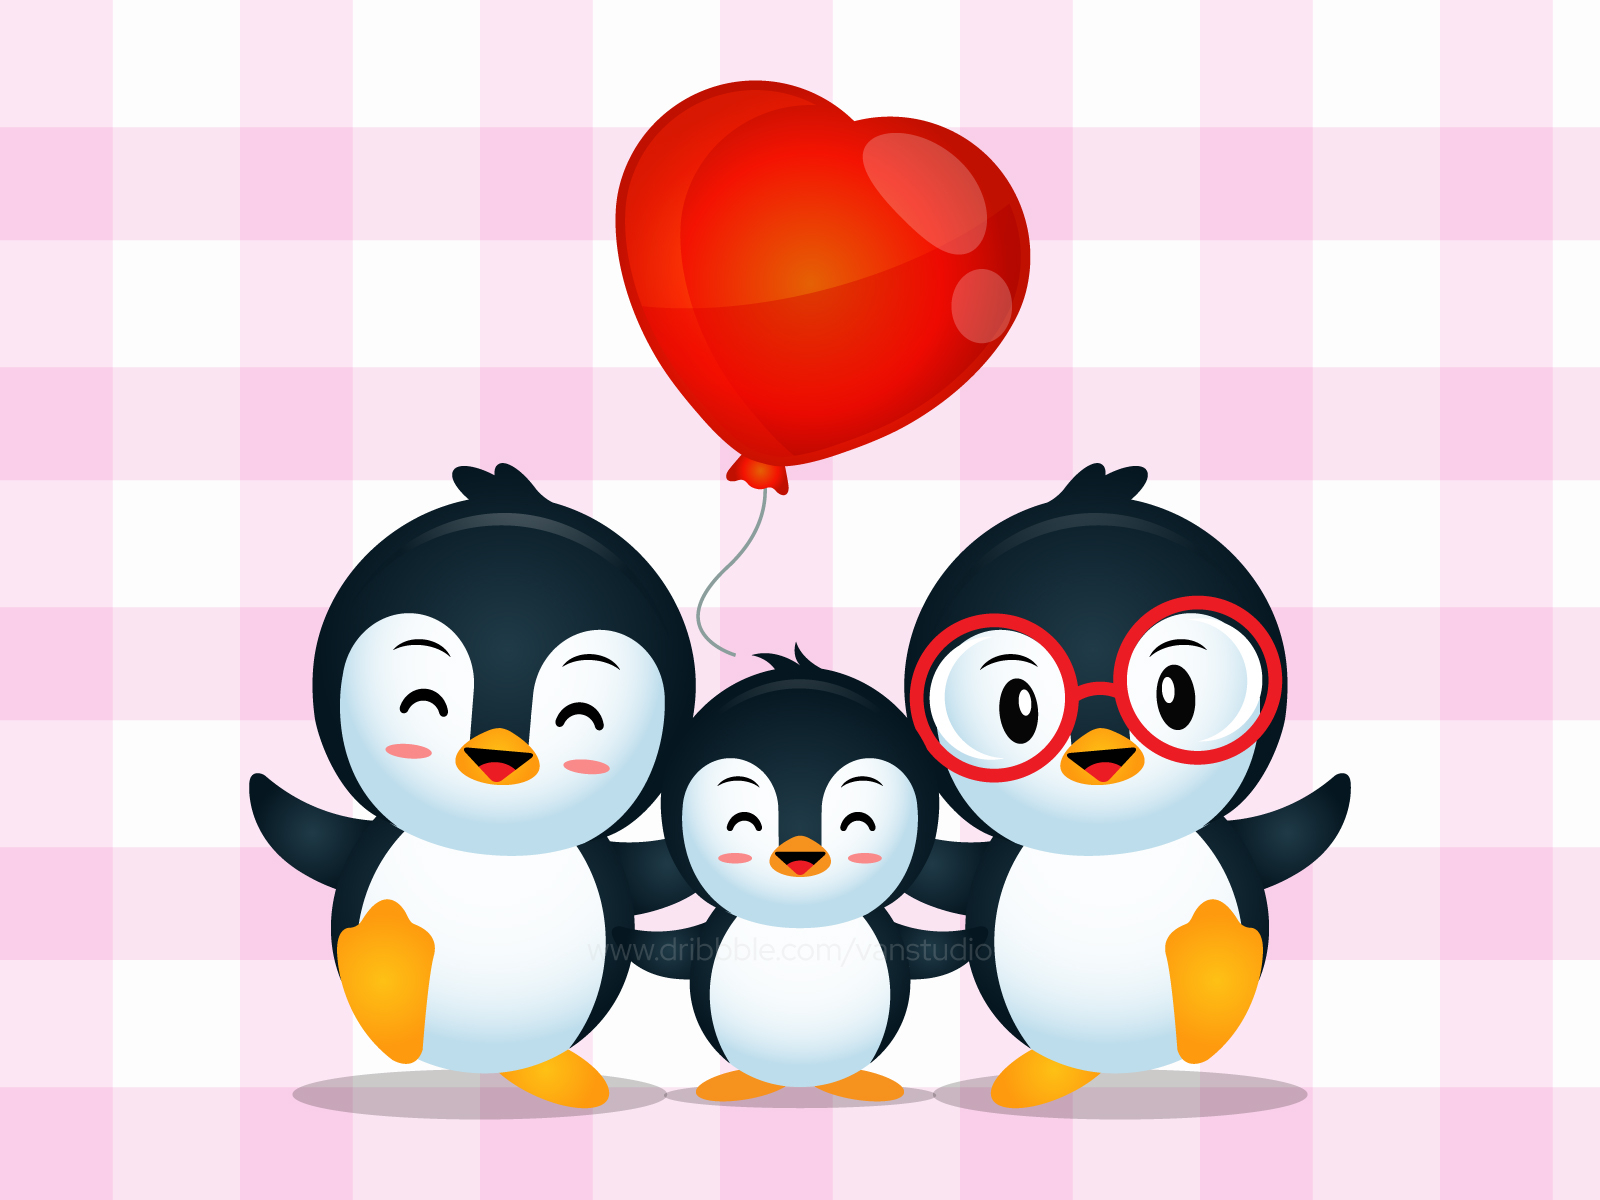 Lovely Cute Penguin Family Cartoon by VanStudio on Dribbble